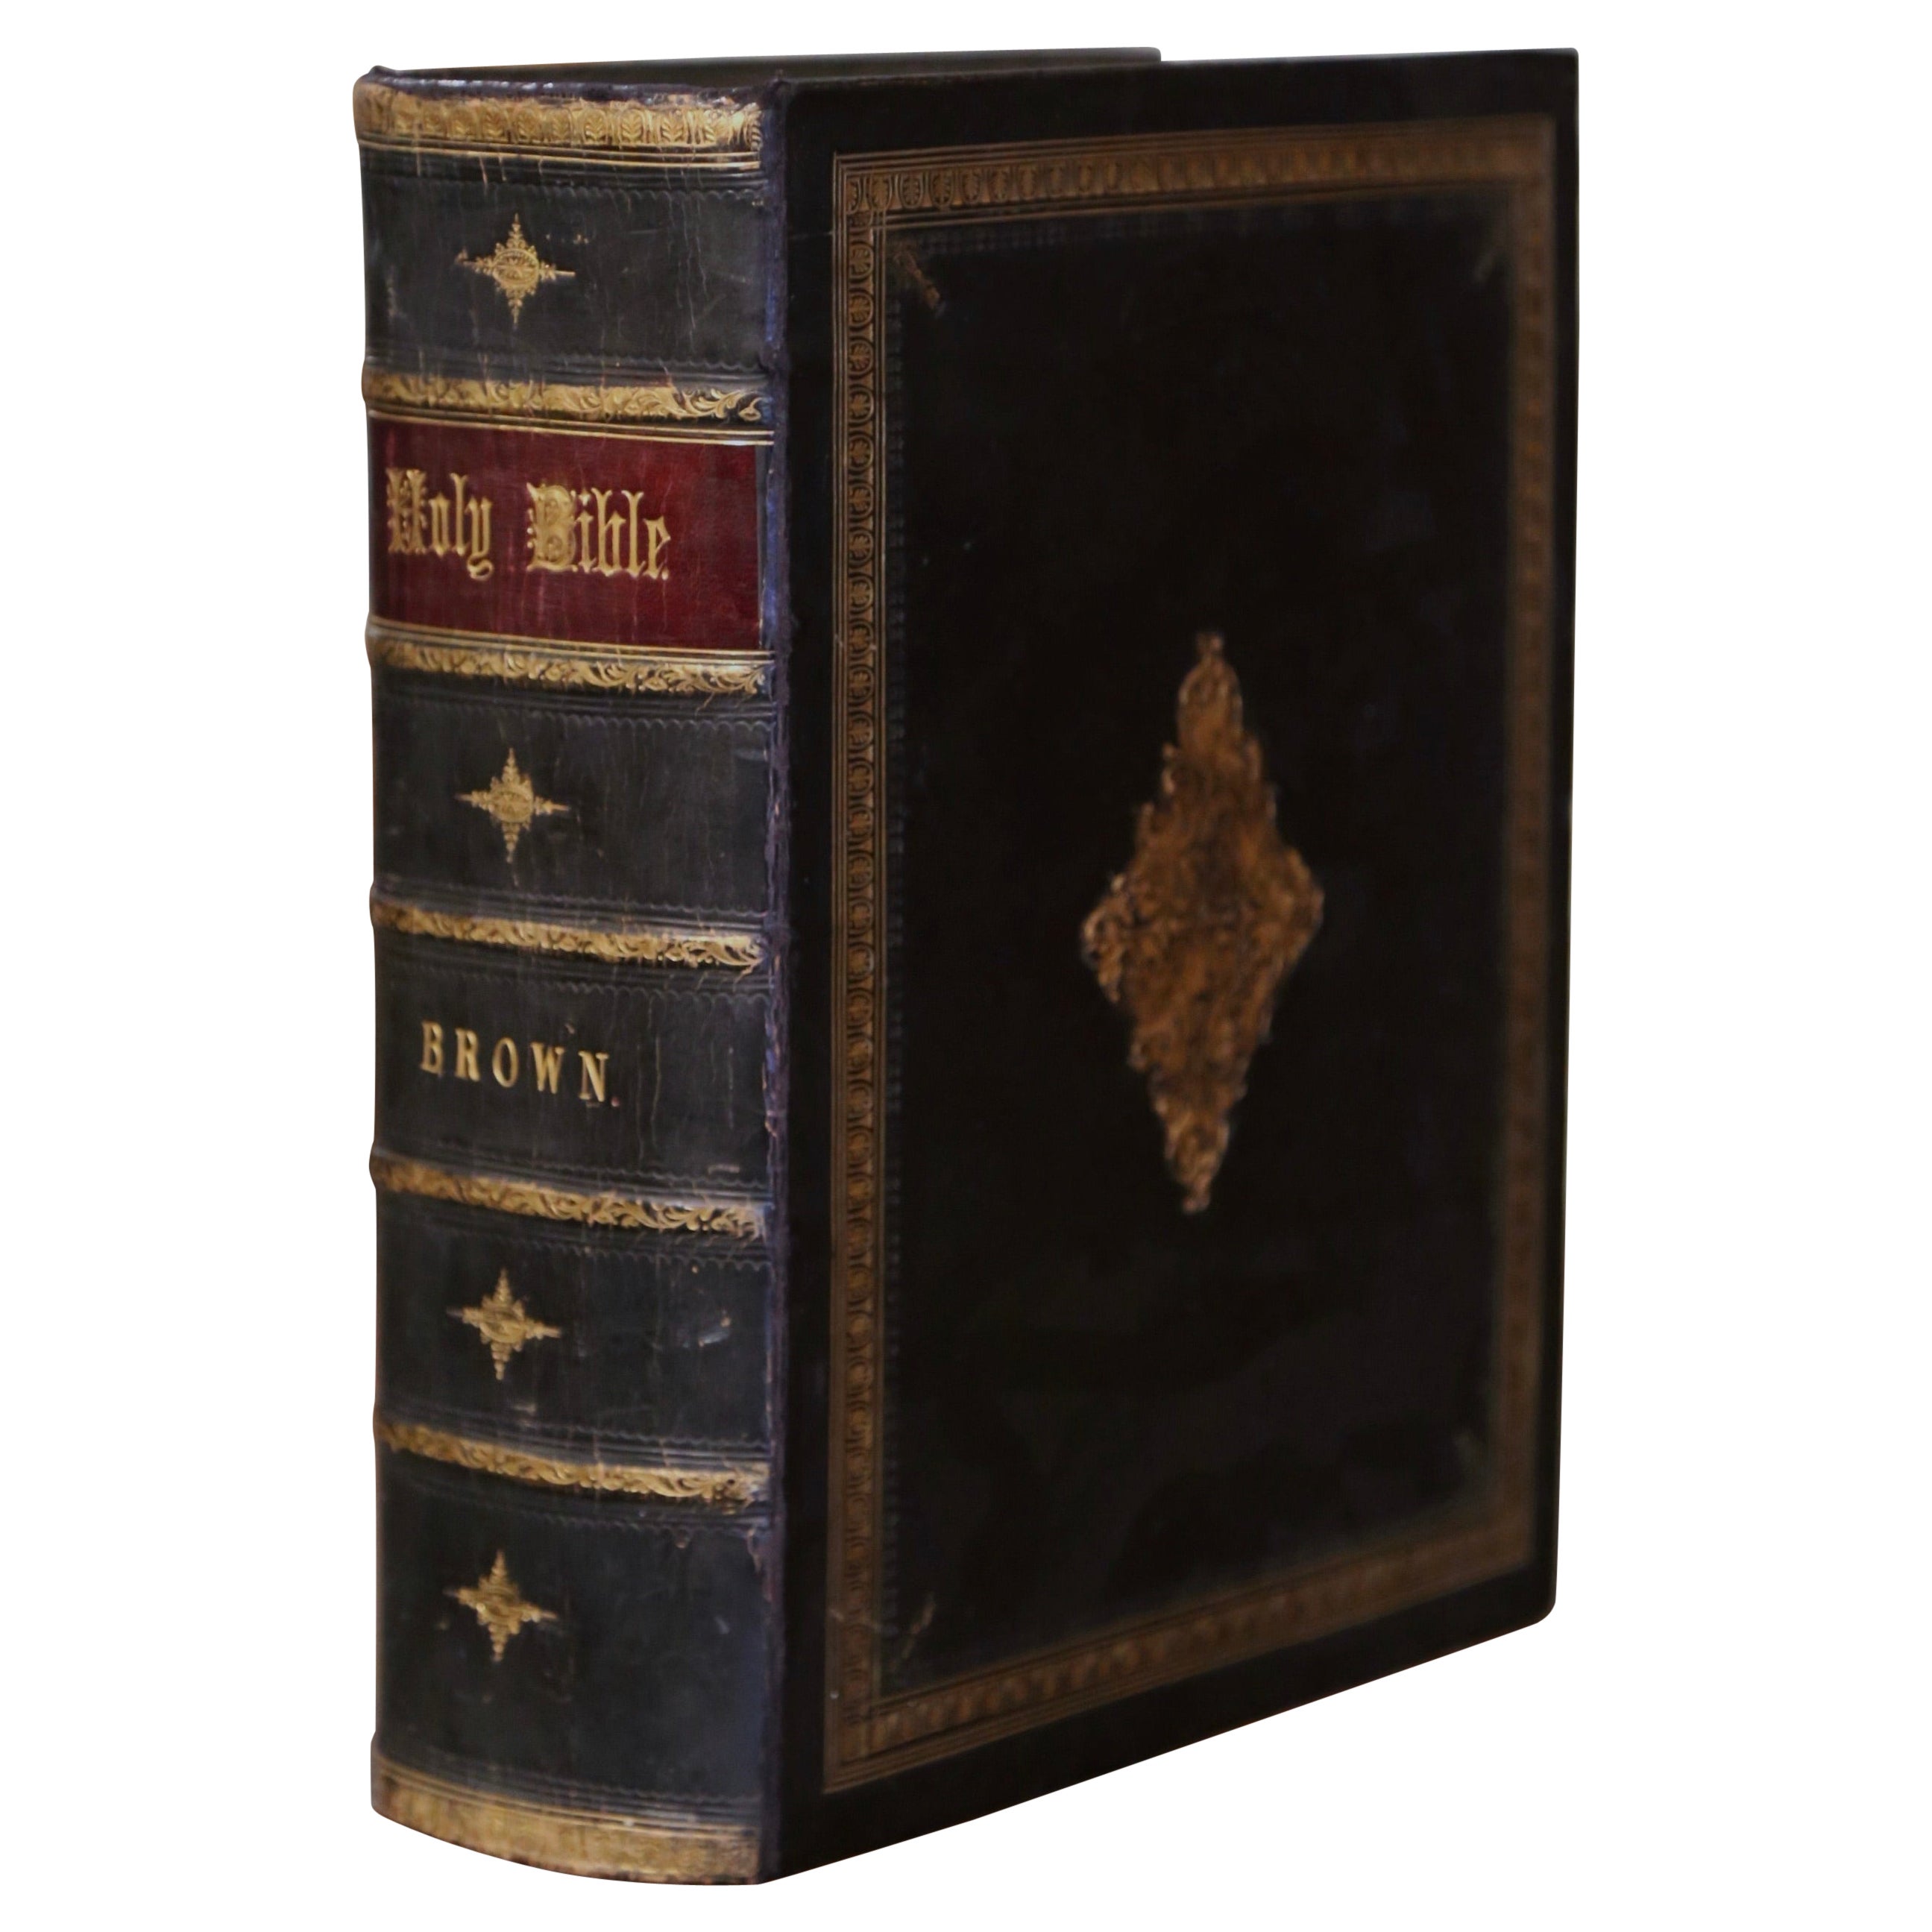 Englische ledergewickelte und vergoldete Heilige Bibel aus dem 19. Jahrhundert von John Brown, datiert 1864